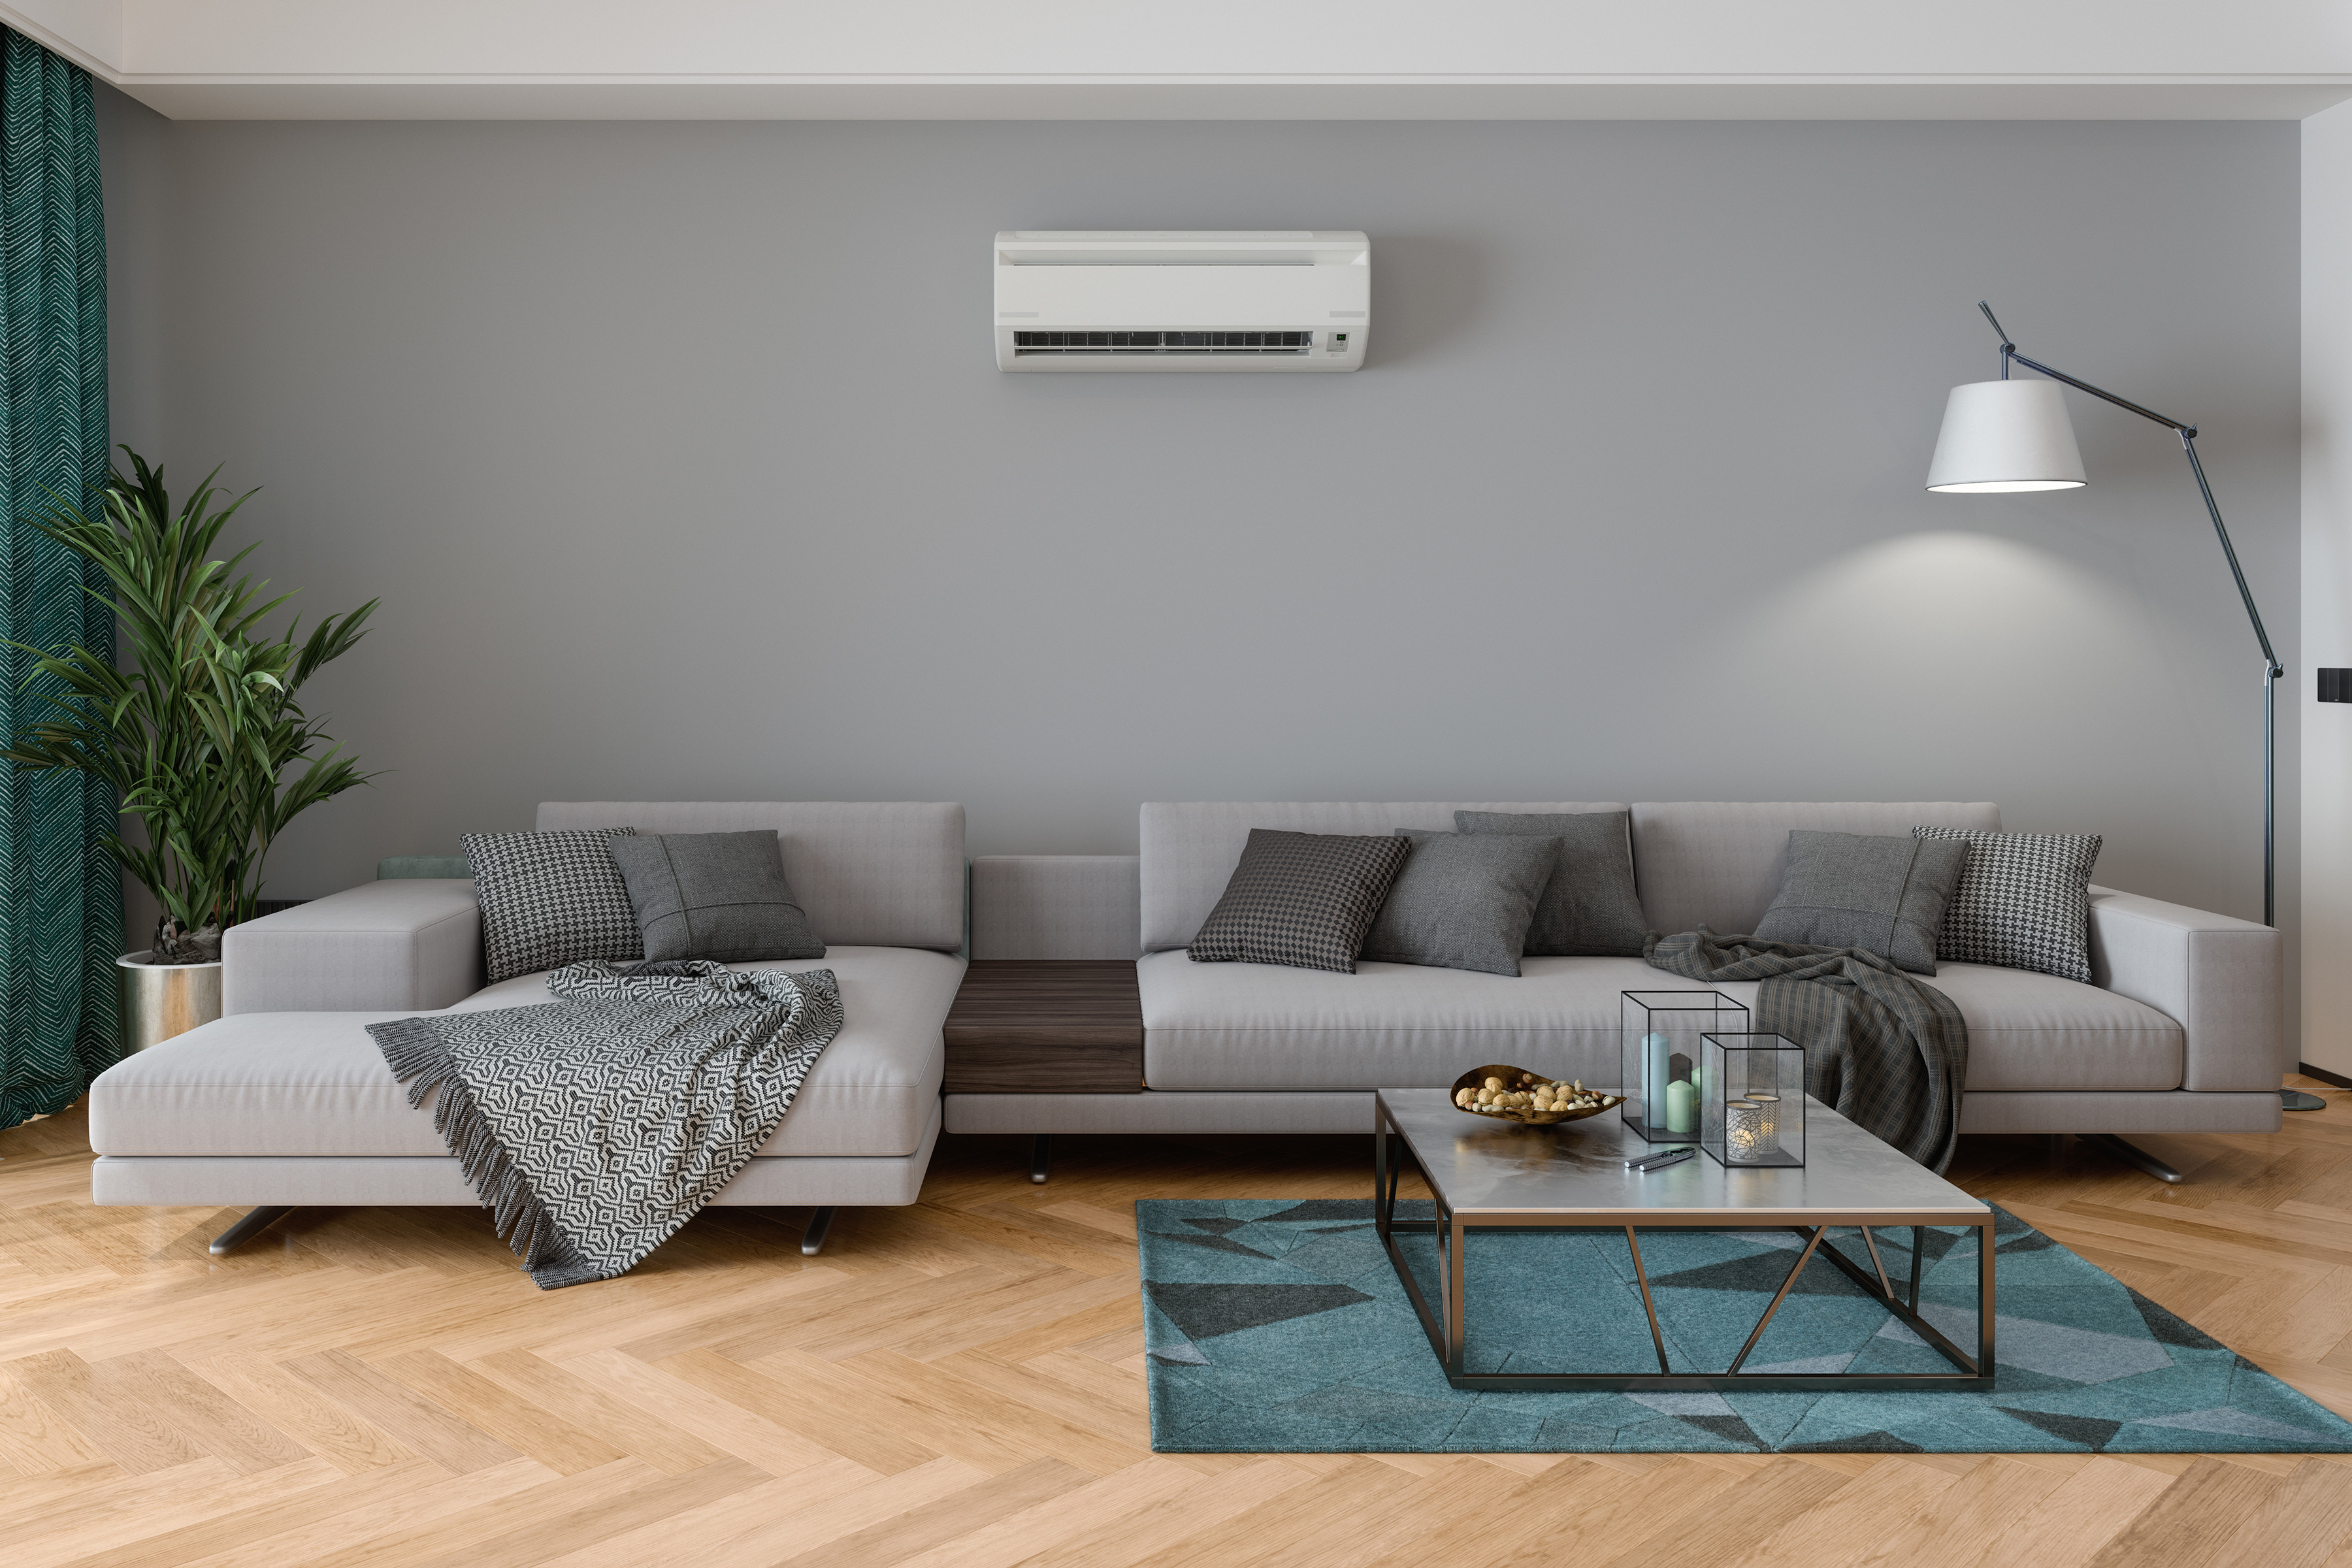 Mini split air conditioner in living room